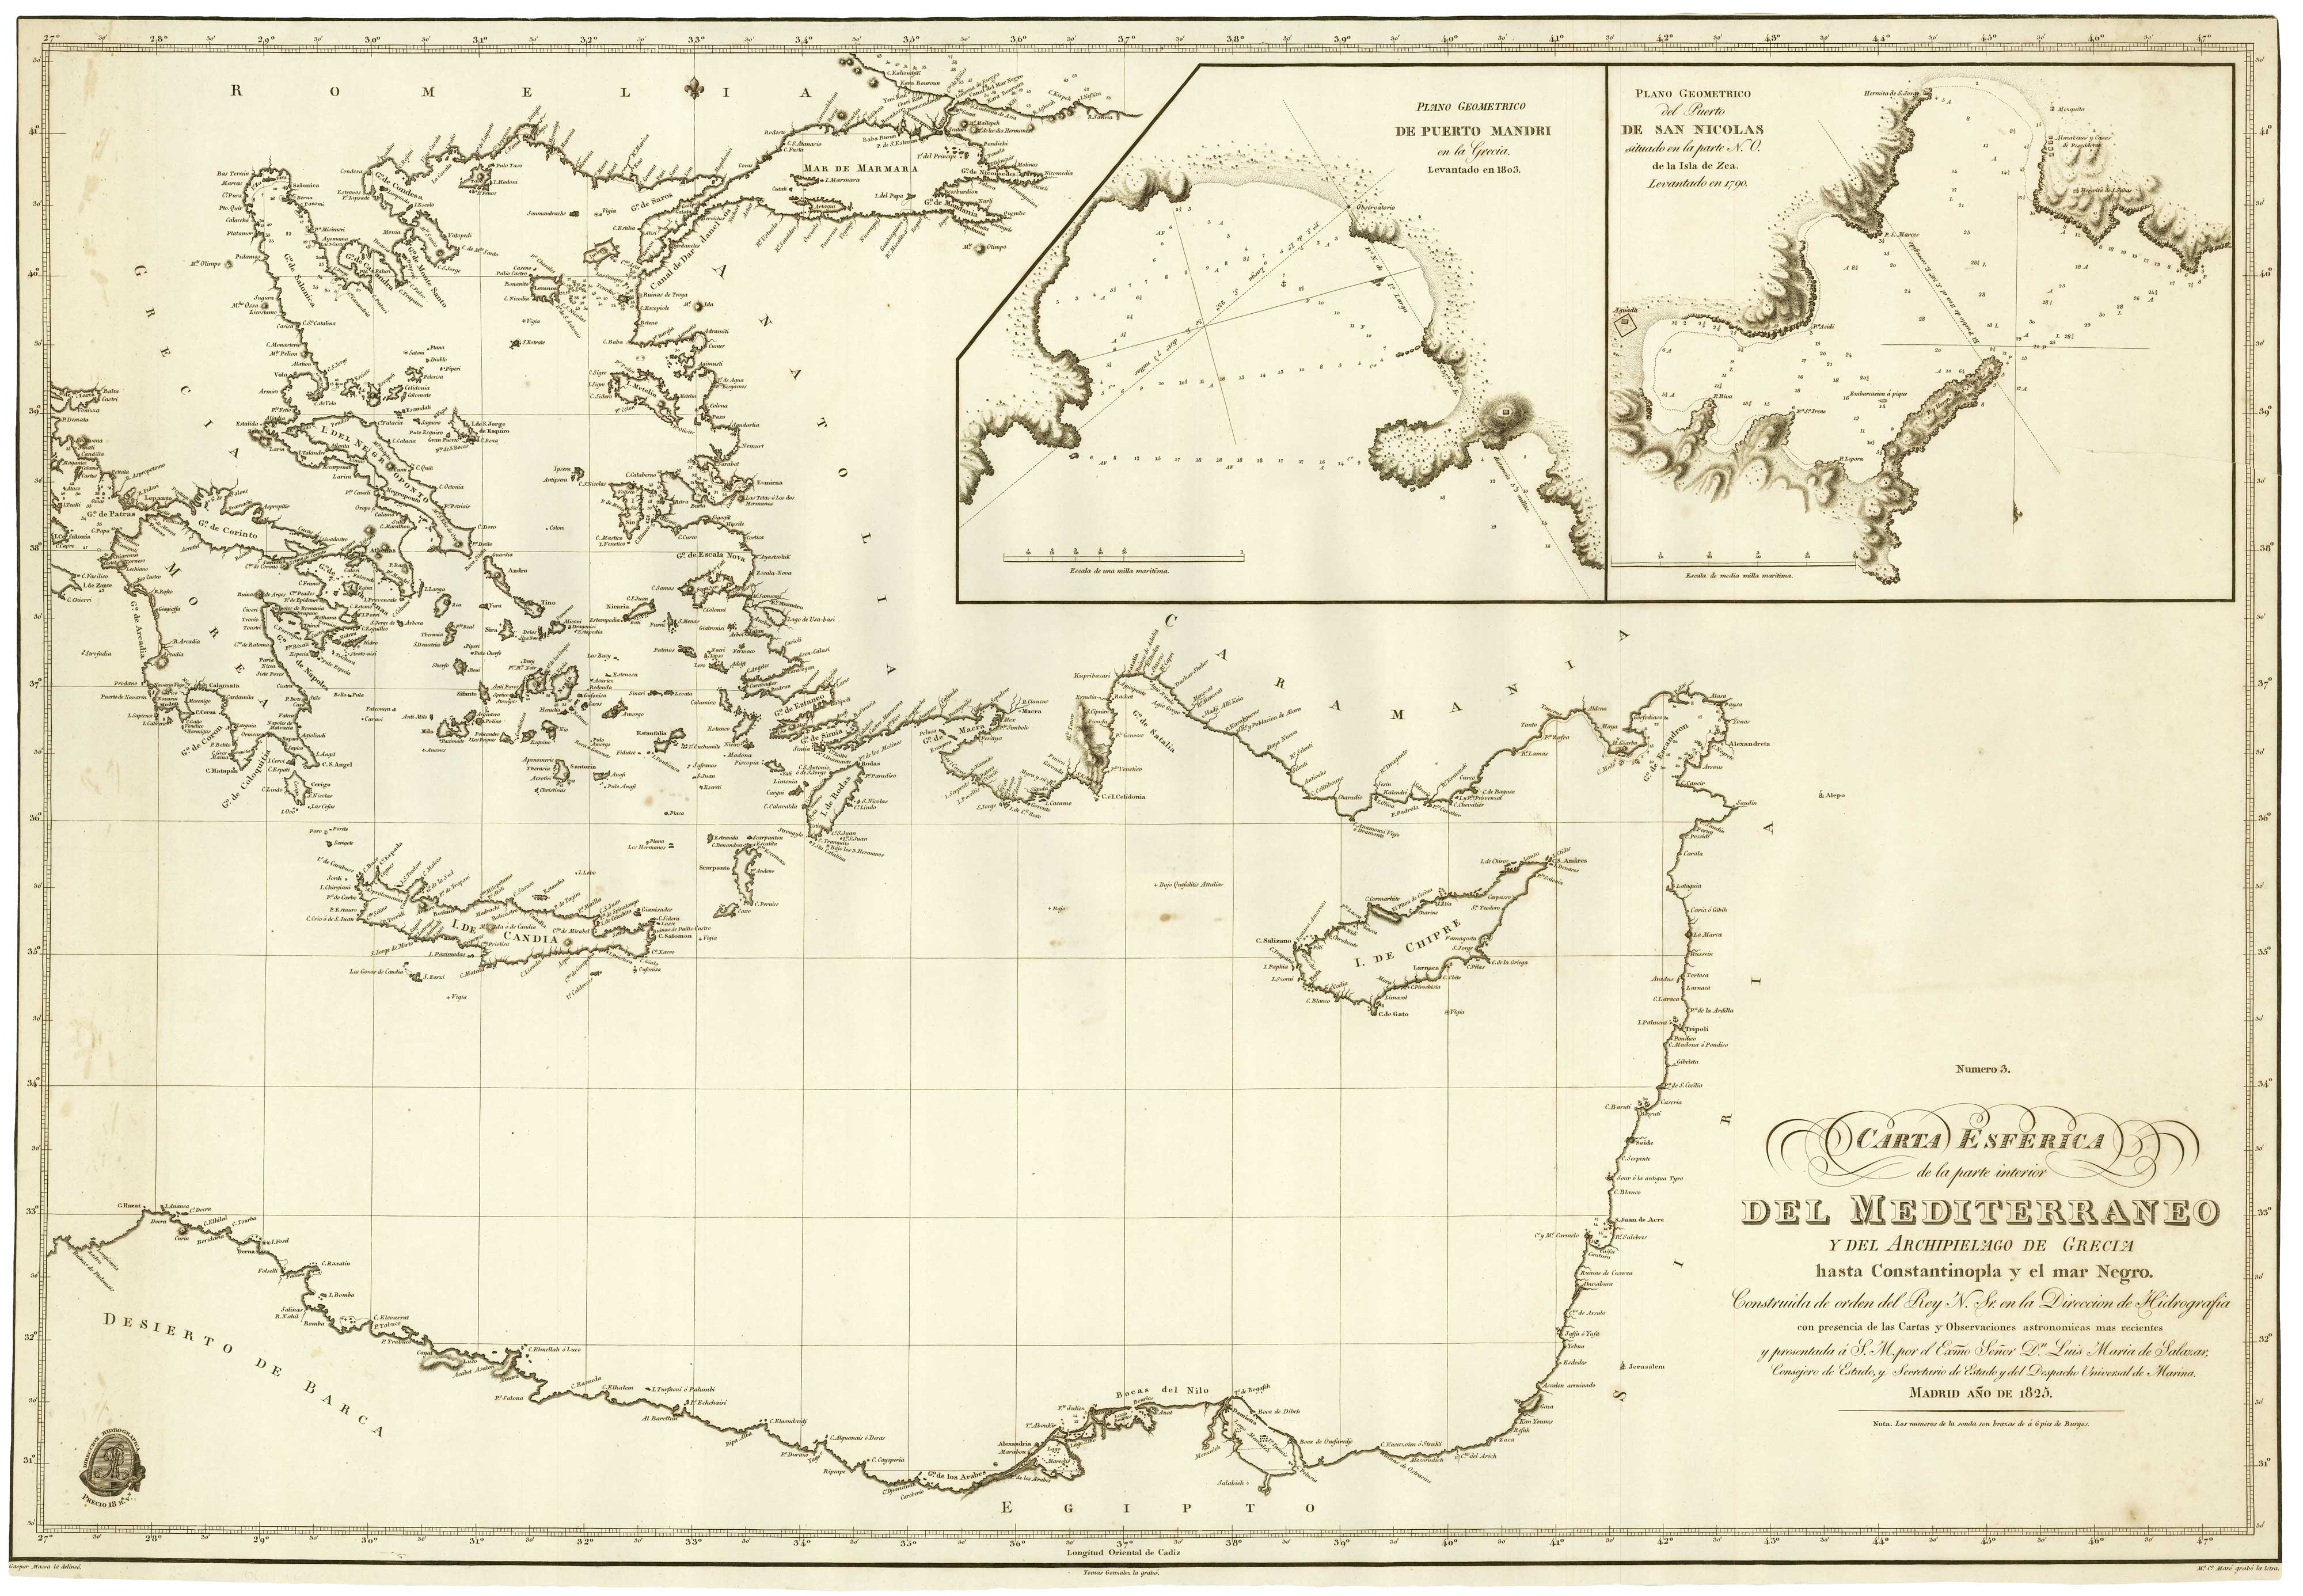 Carta Esferica de la parte interior del Mediterraneo y del Archipielago de Grecia hasta Constantinopla y el mar Nego.